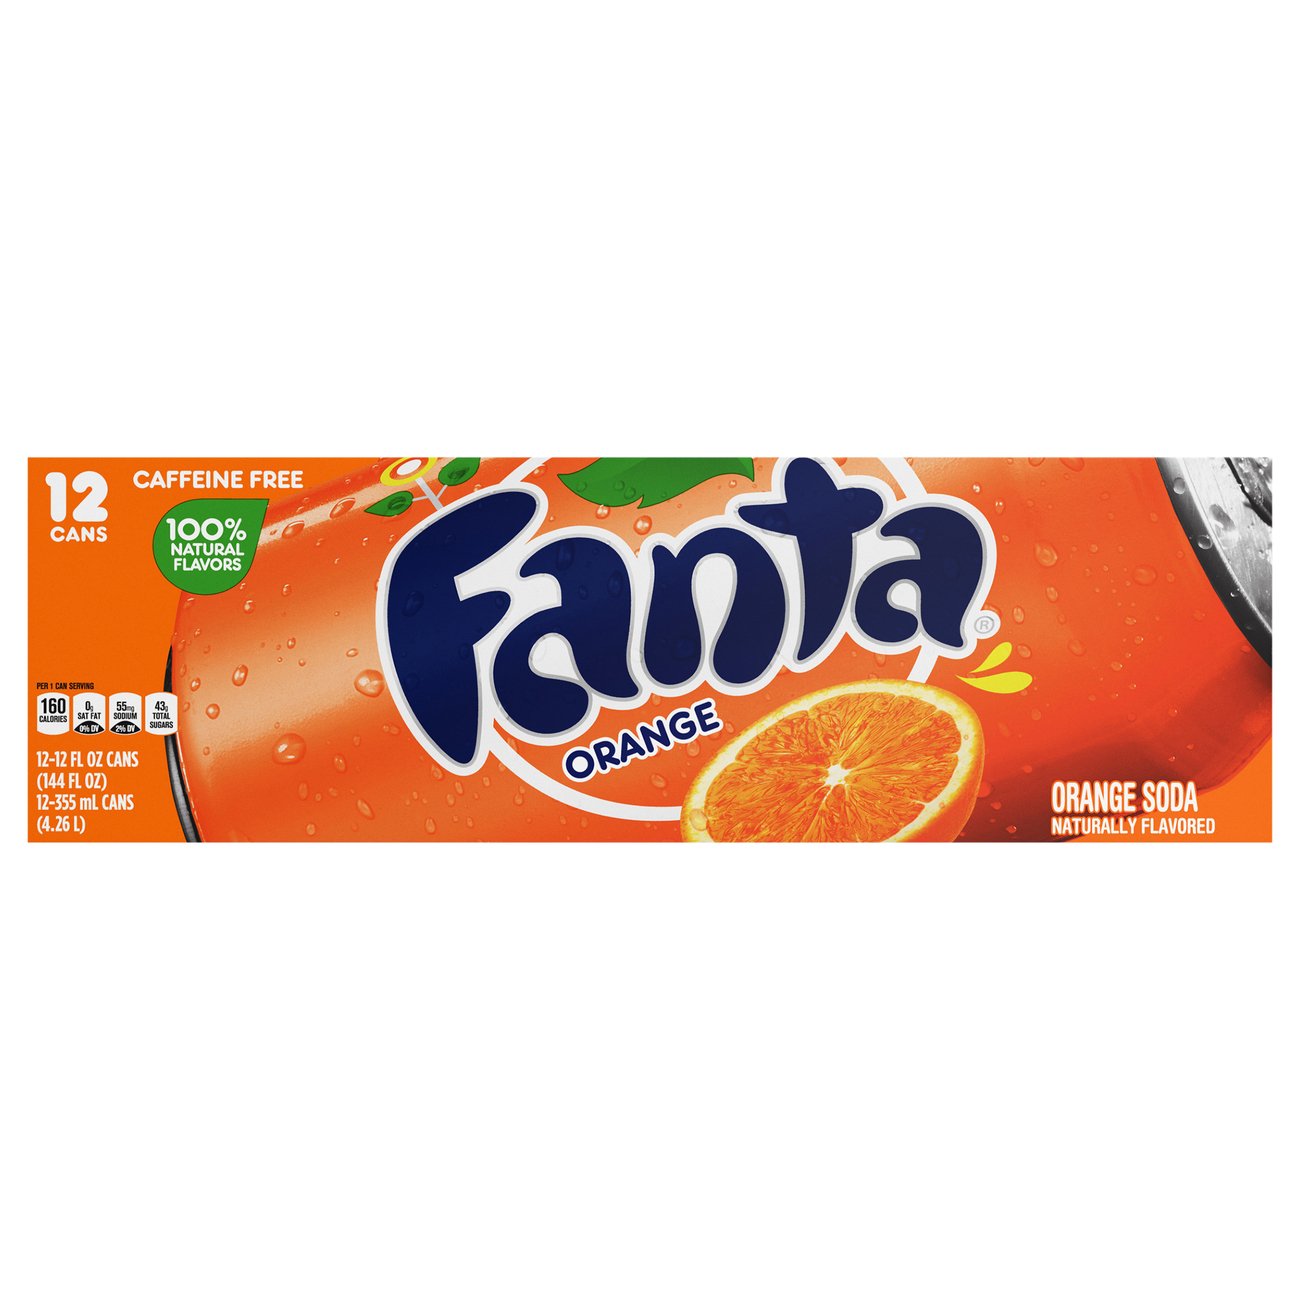 Fanta Caffeine Free Orange Soda 12 oz Cans - Shop Soda at H-E-B